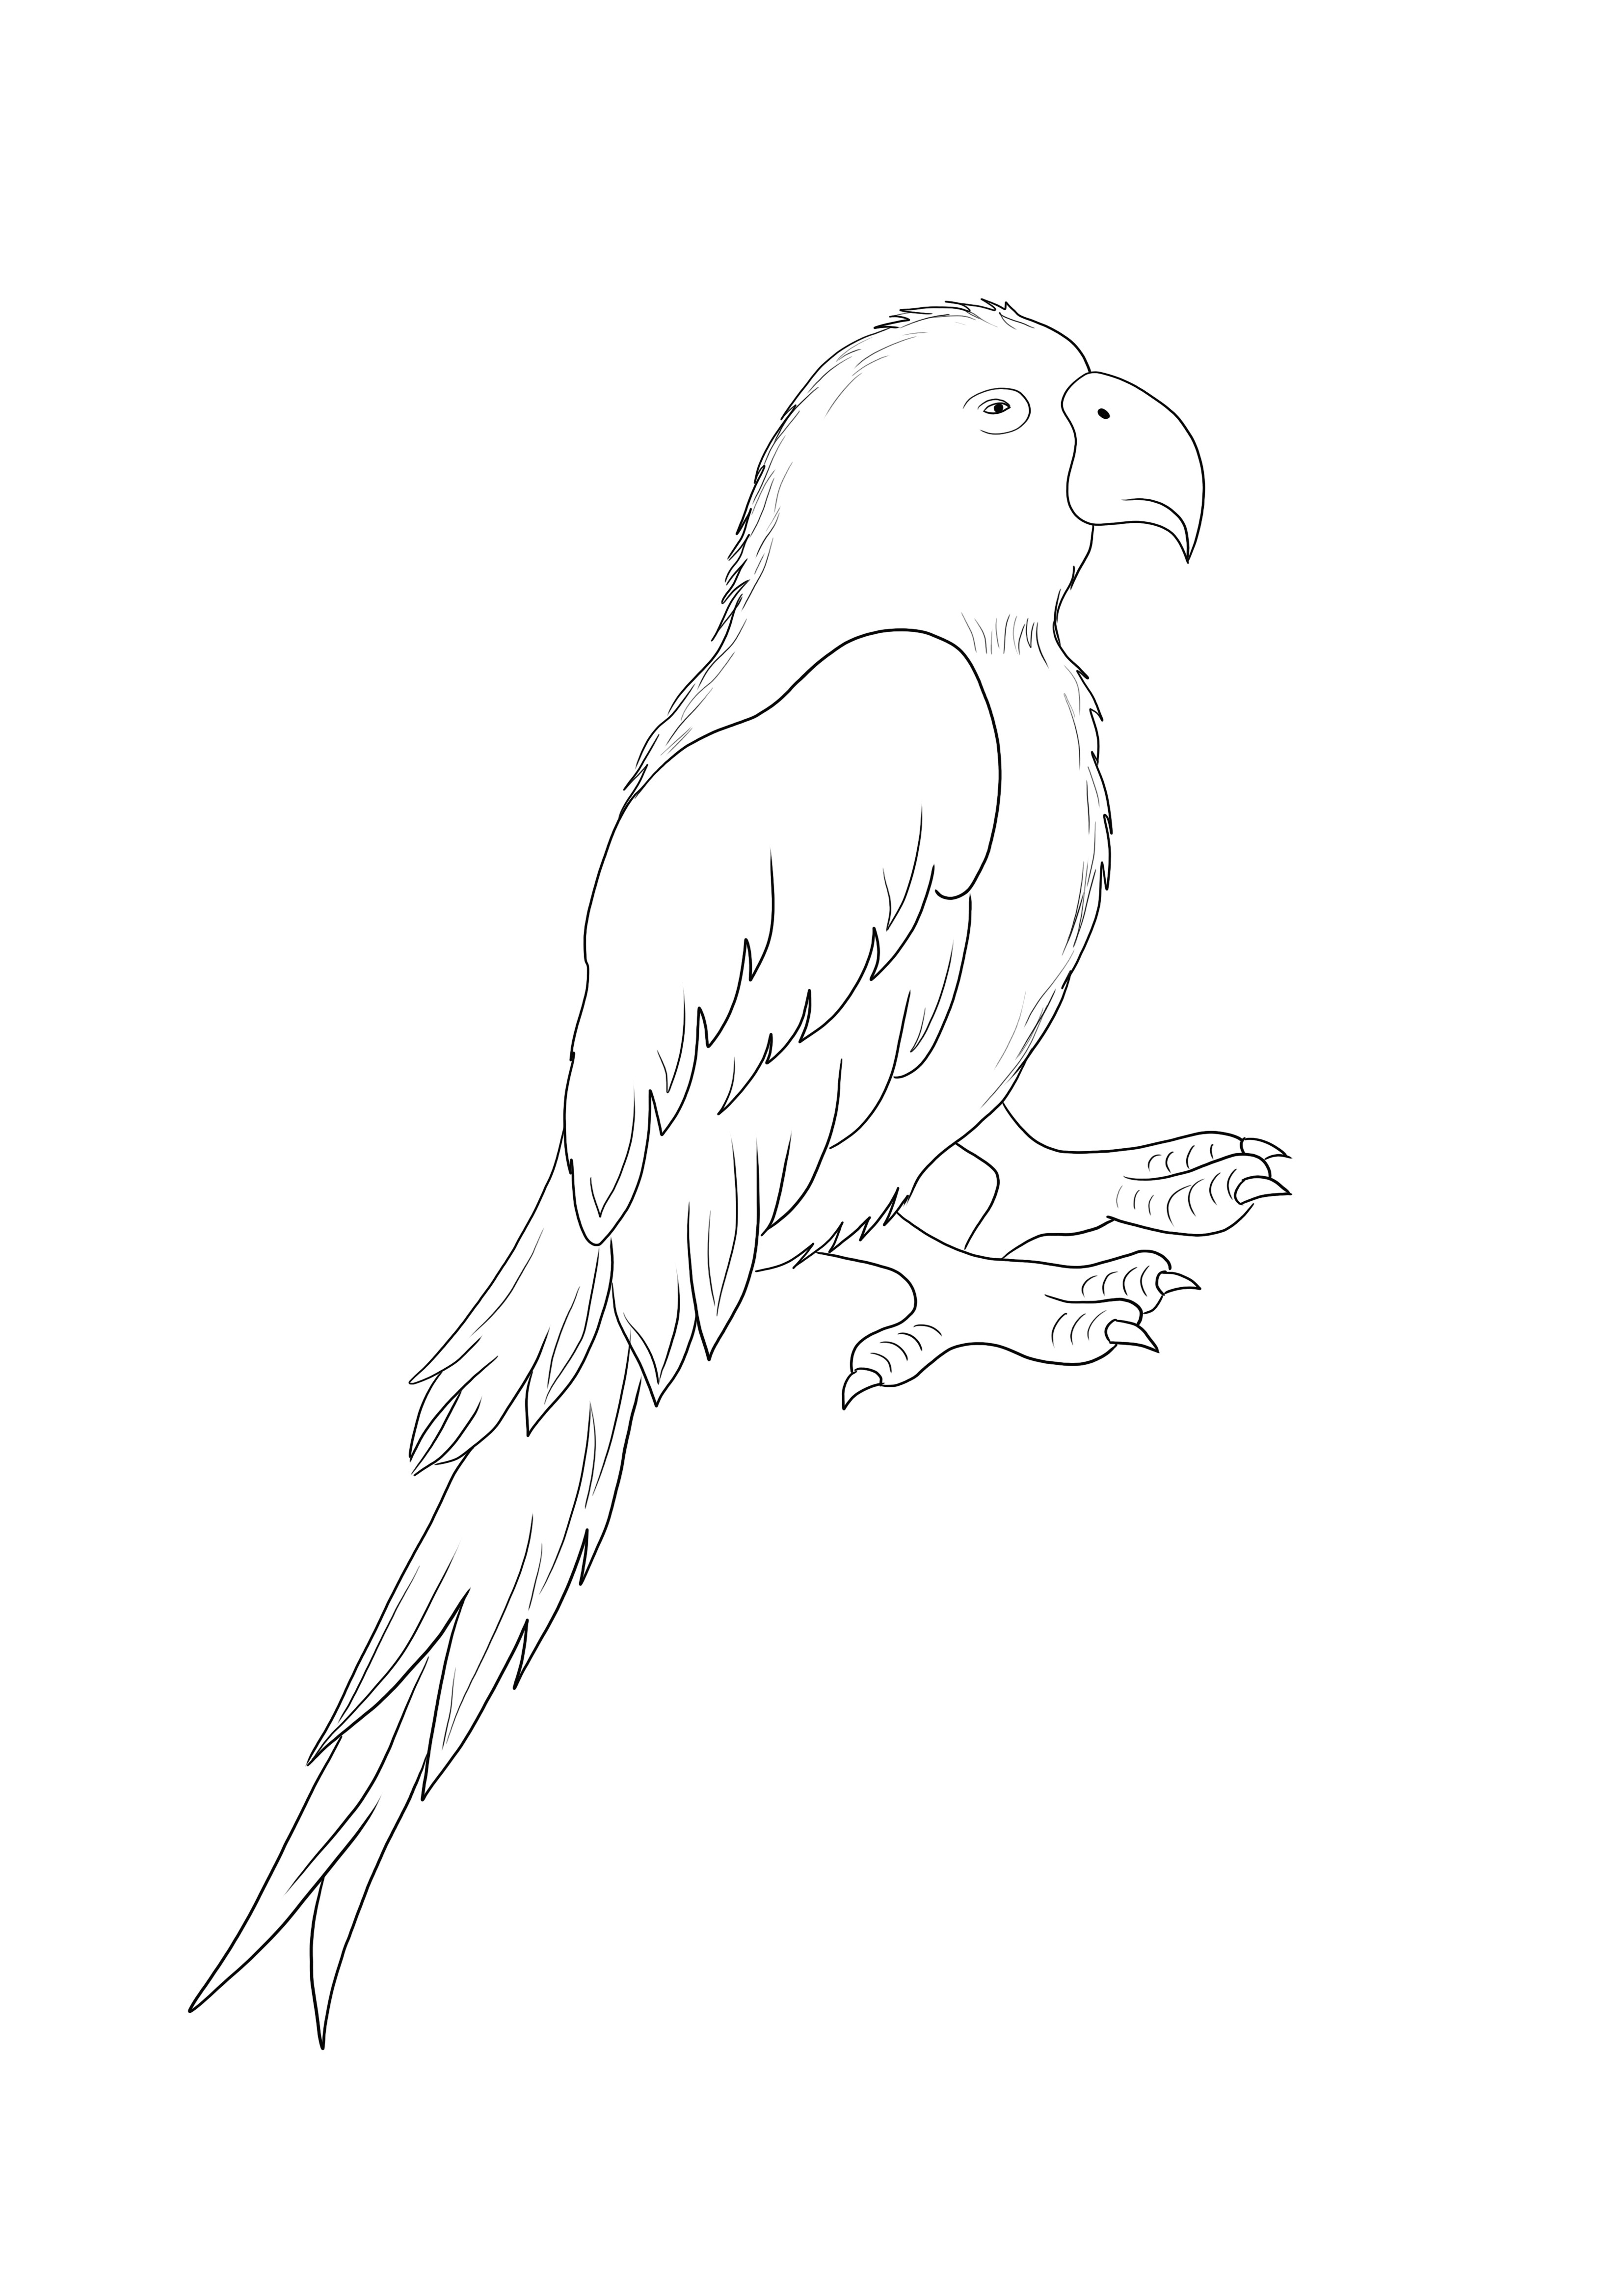 Parrot Bird gratuit à imprimer et à colorier simplement pour les enfants de tous âges